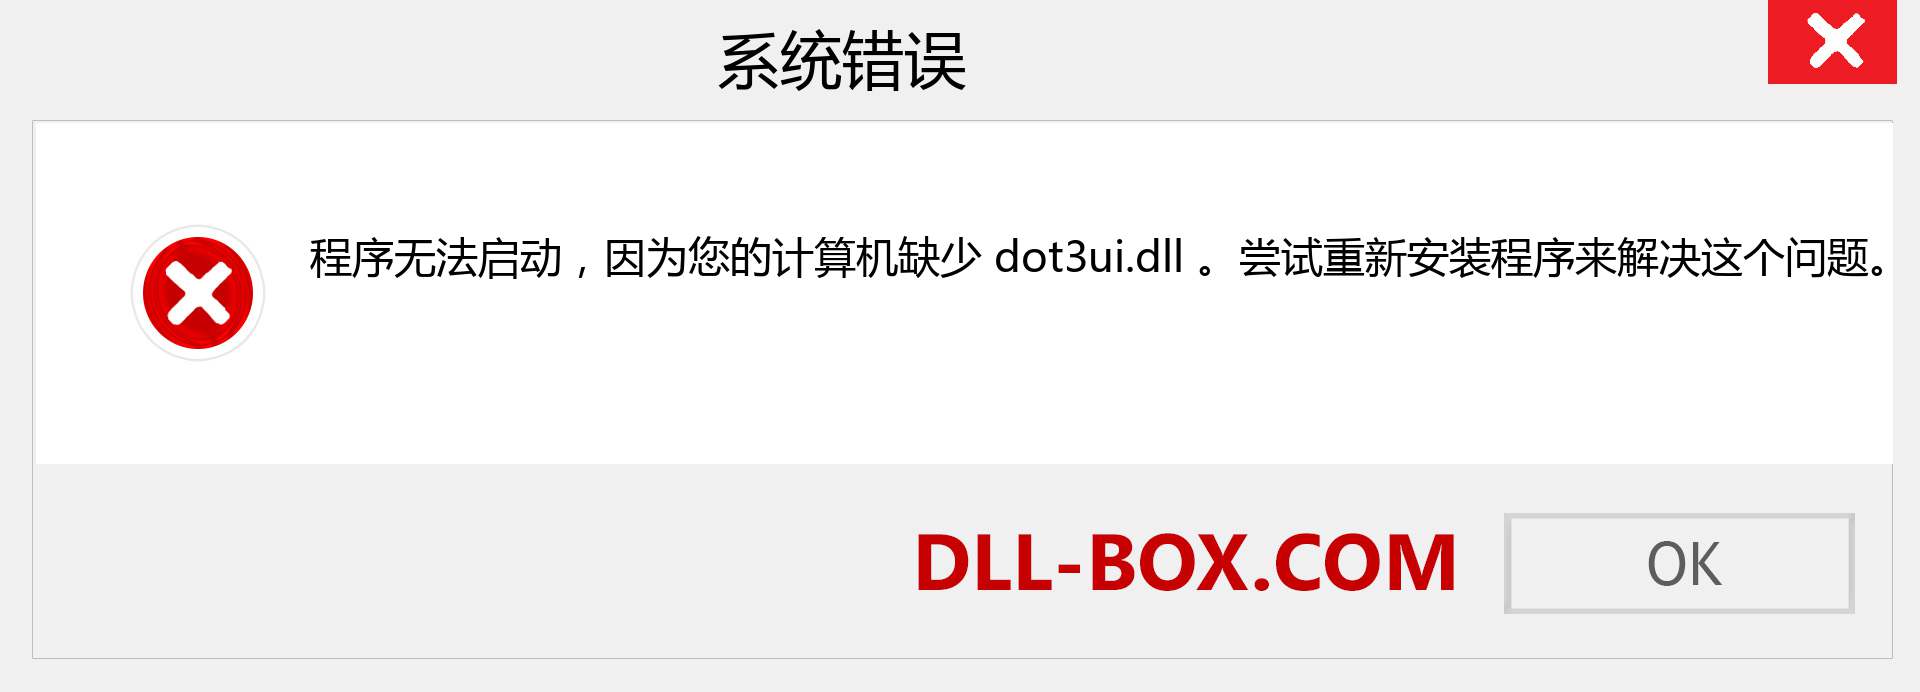 dot3ui.dll 文件丢失？。 适用于 Windows 7、8、10 的下载 - 修复 Windows、照片、图像上的 dot3ui dll 丢失错误